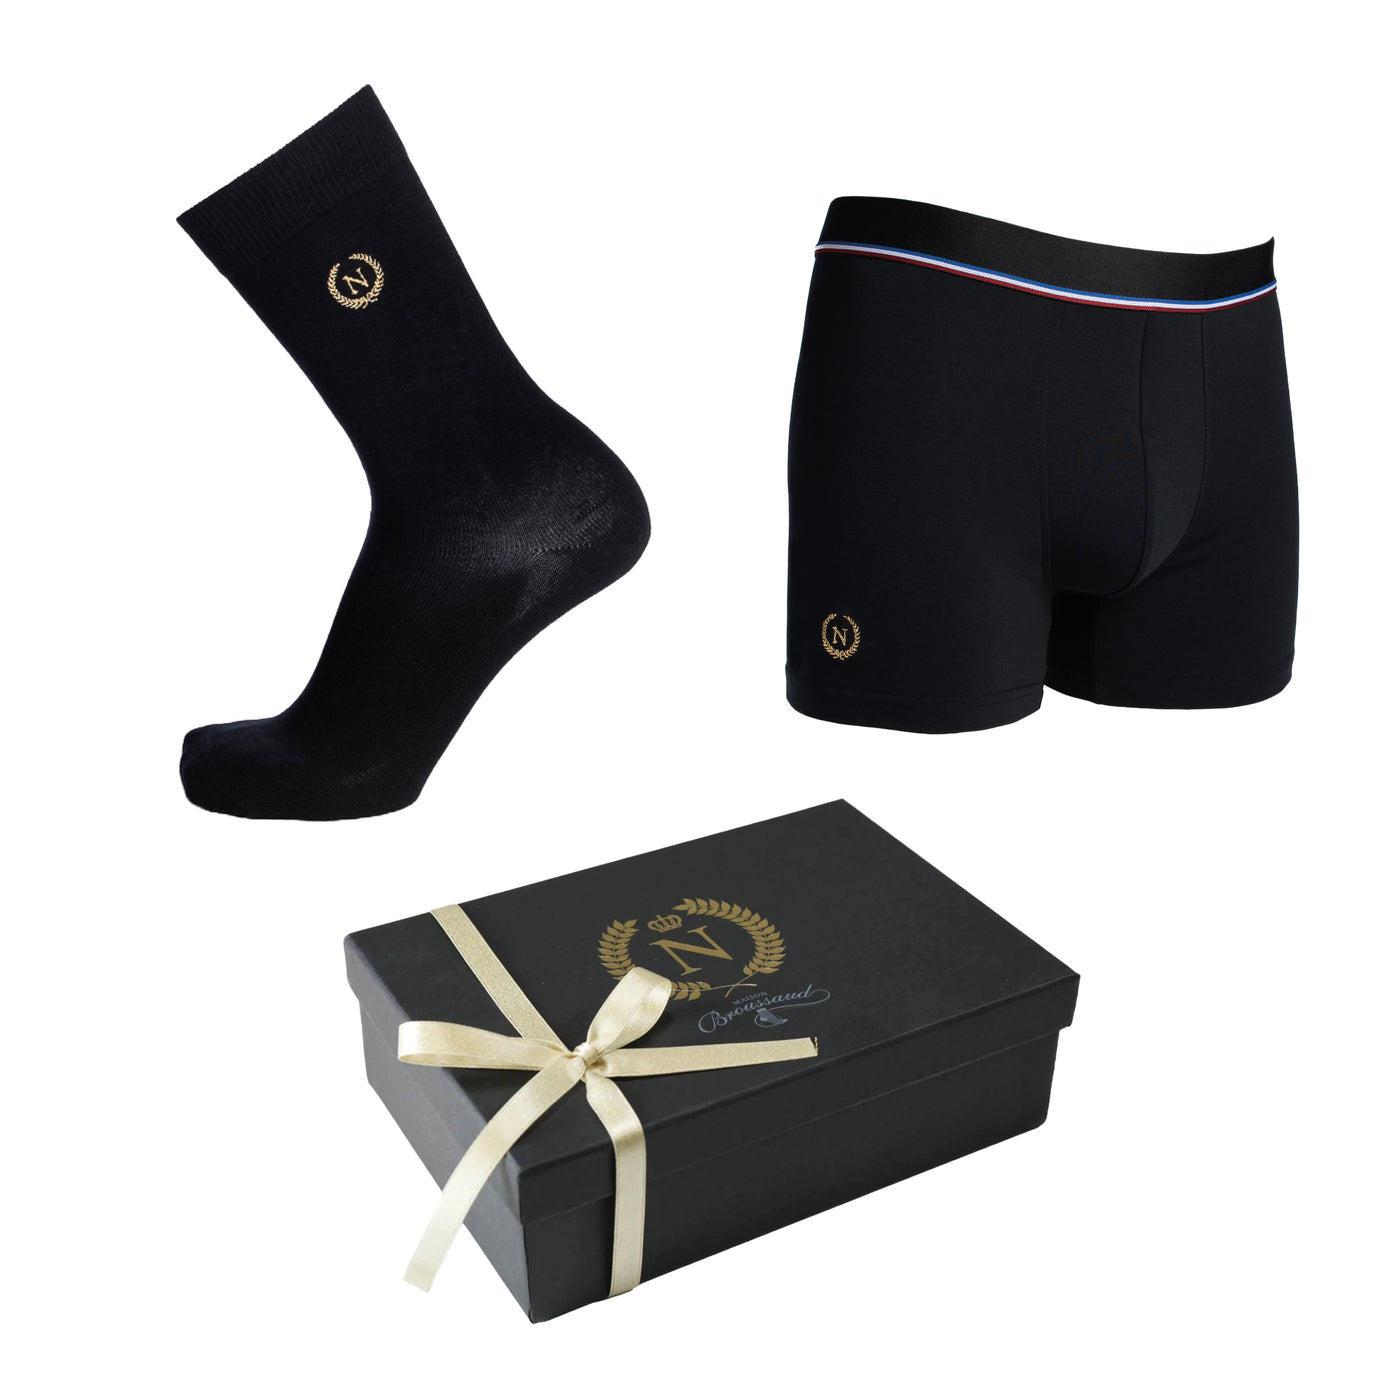 Napoleon box "The Emperor" - black boxers and socks